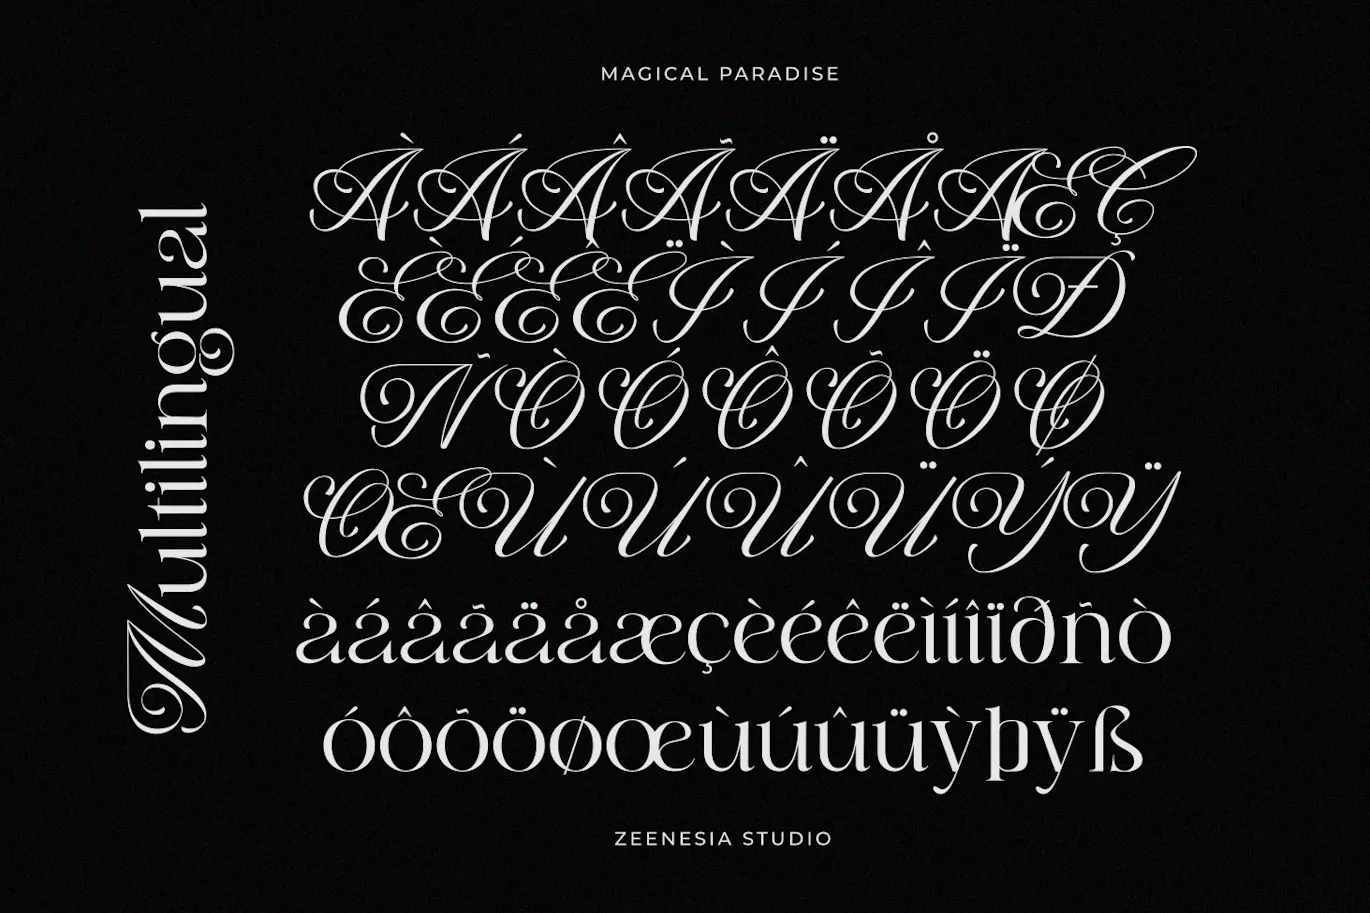 衬线与花体风格结合的现代风标题字体 - Magical Paradise 设计字体 第11张